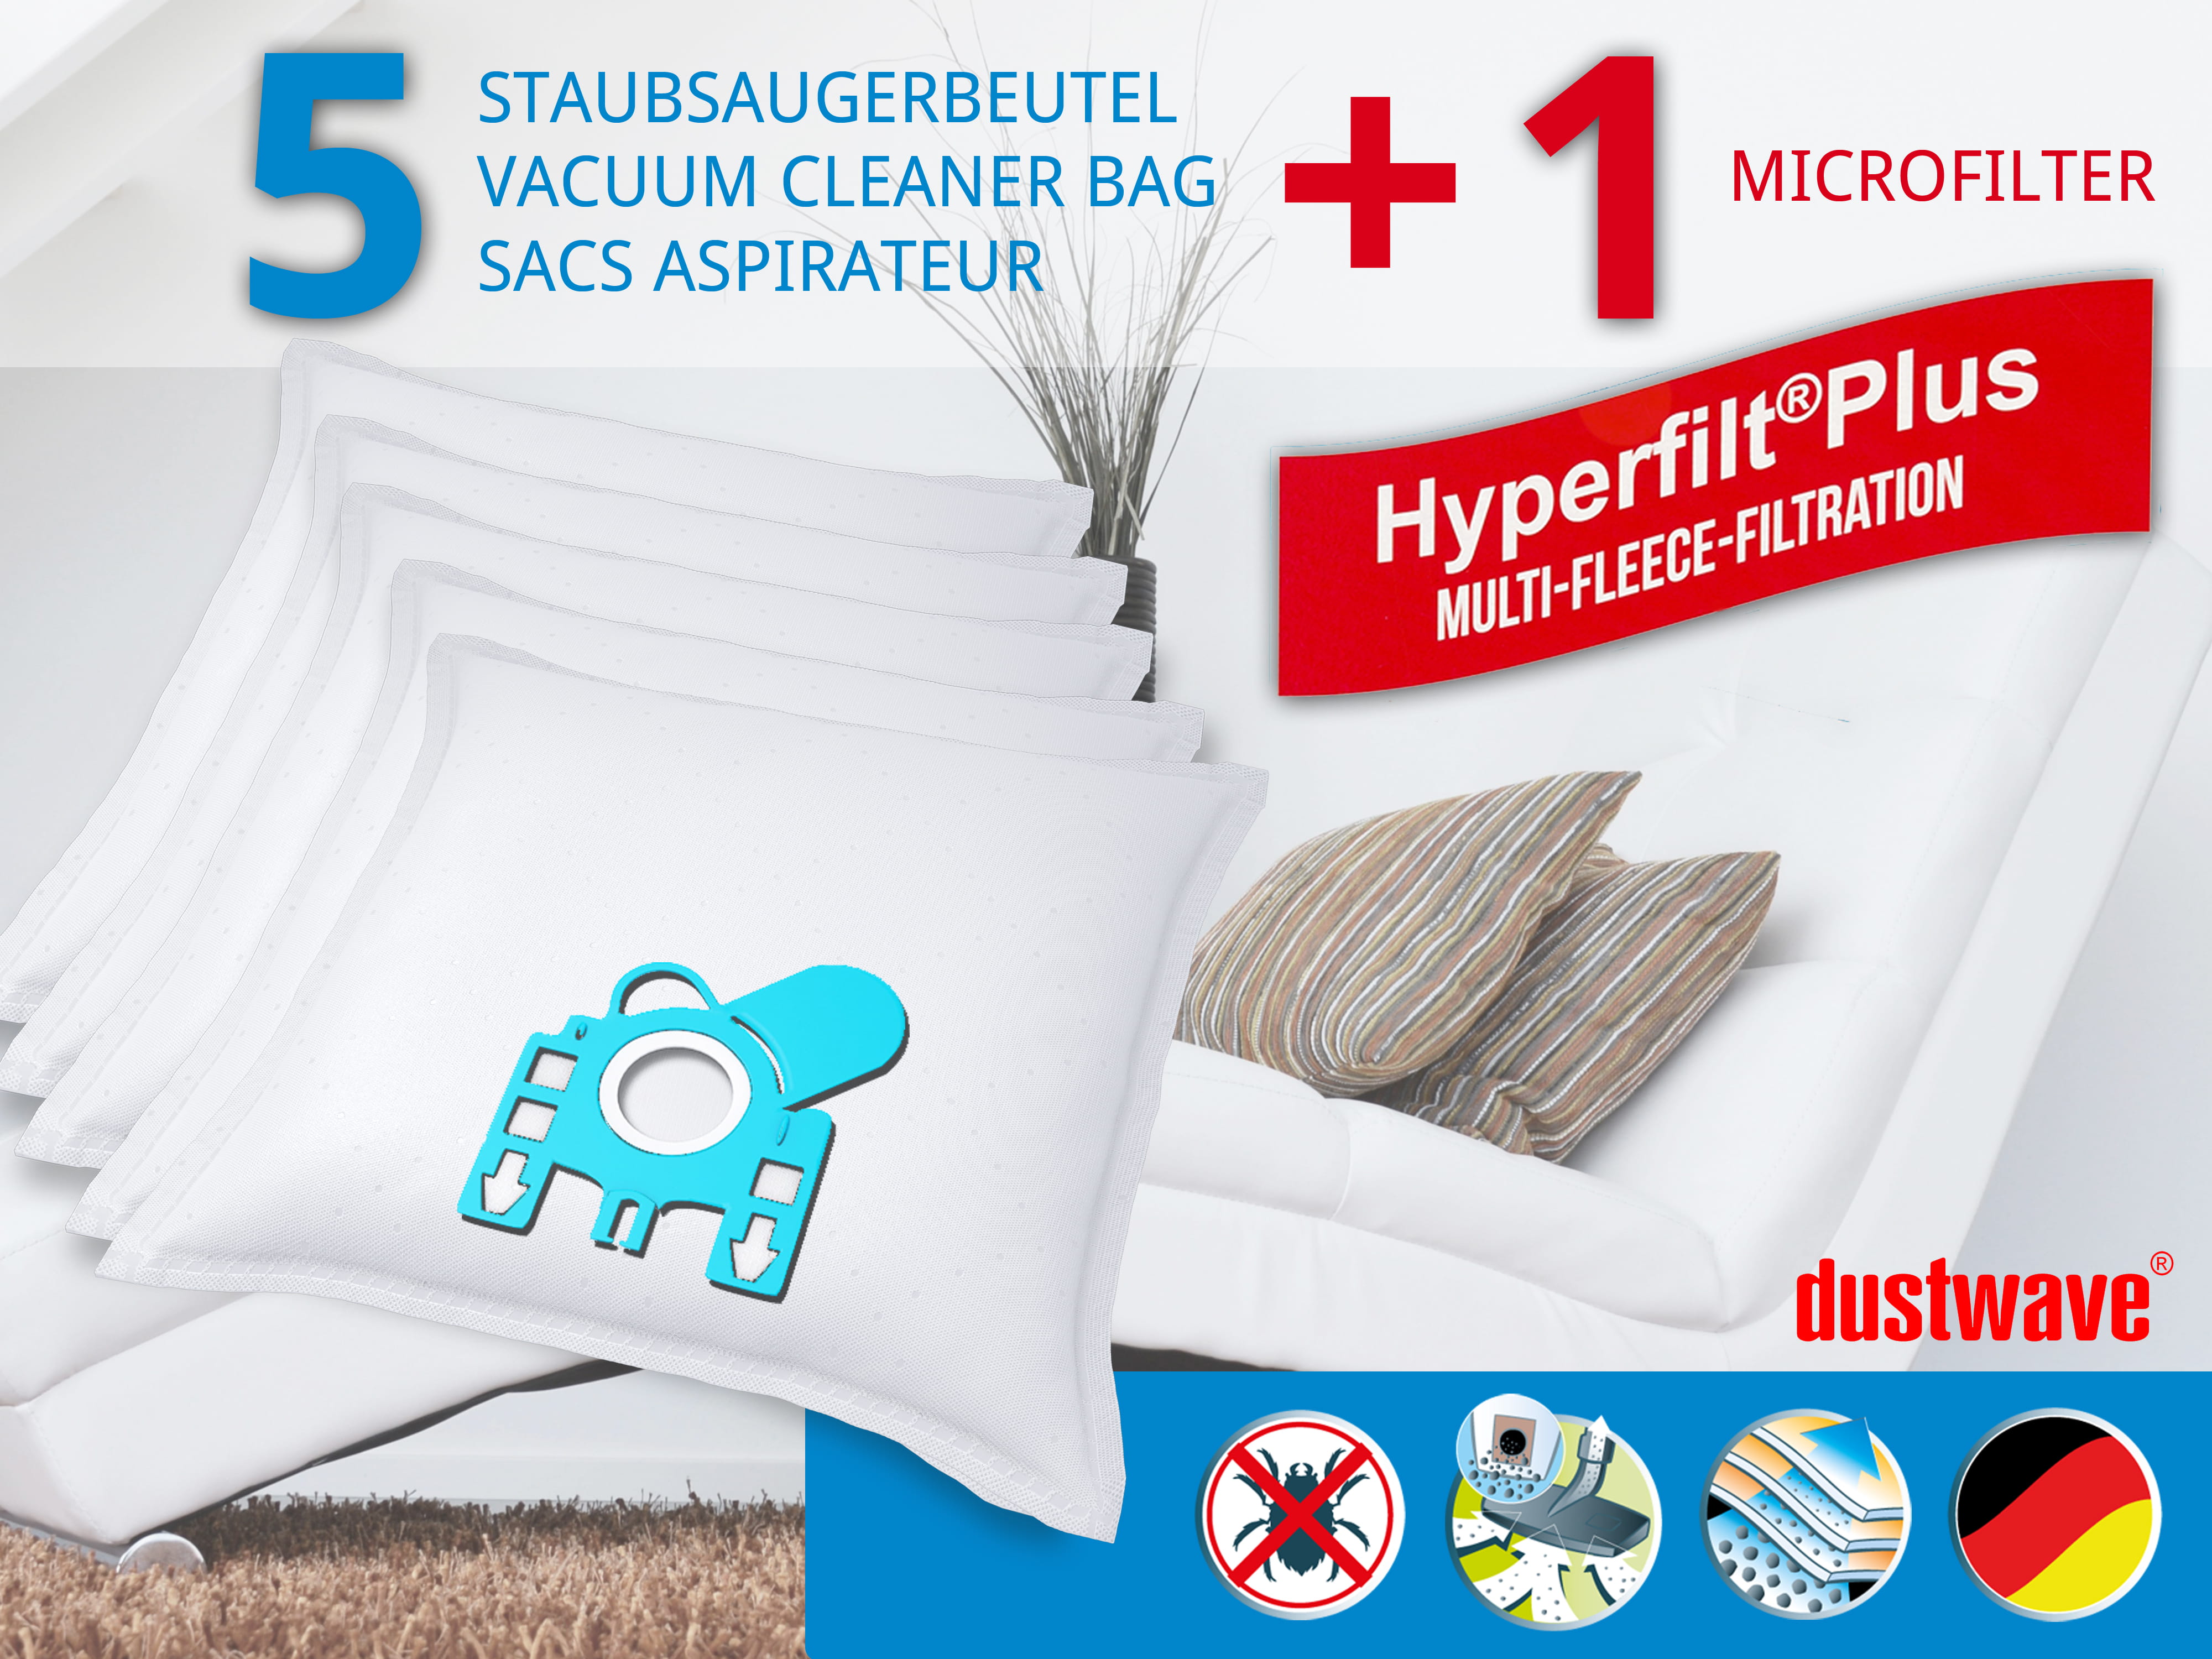 Dustwave® 5 Staubsaugerbeutel für Miele Brillant 4500 - hocheffizient, mehrlagiges Mikrovlies mit Hygieneverschluss - Made in Germany